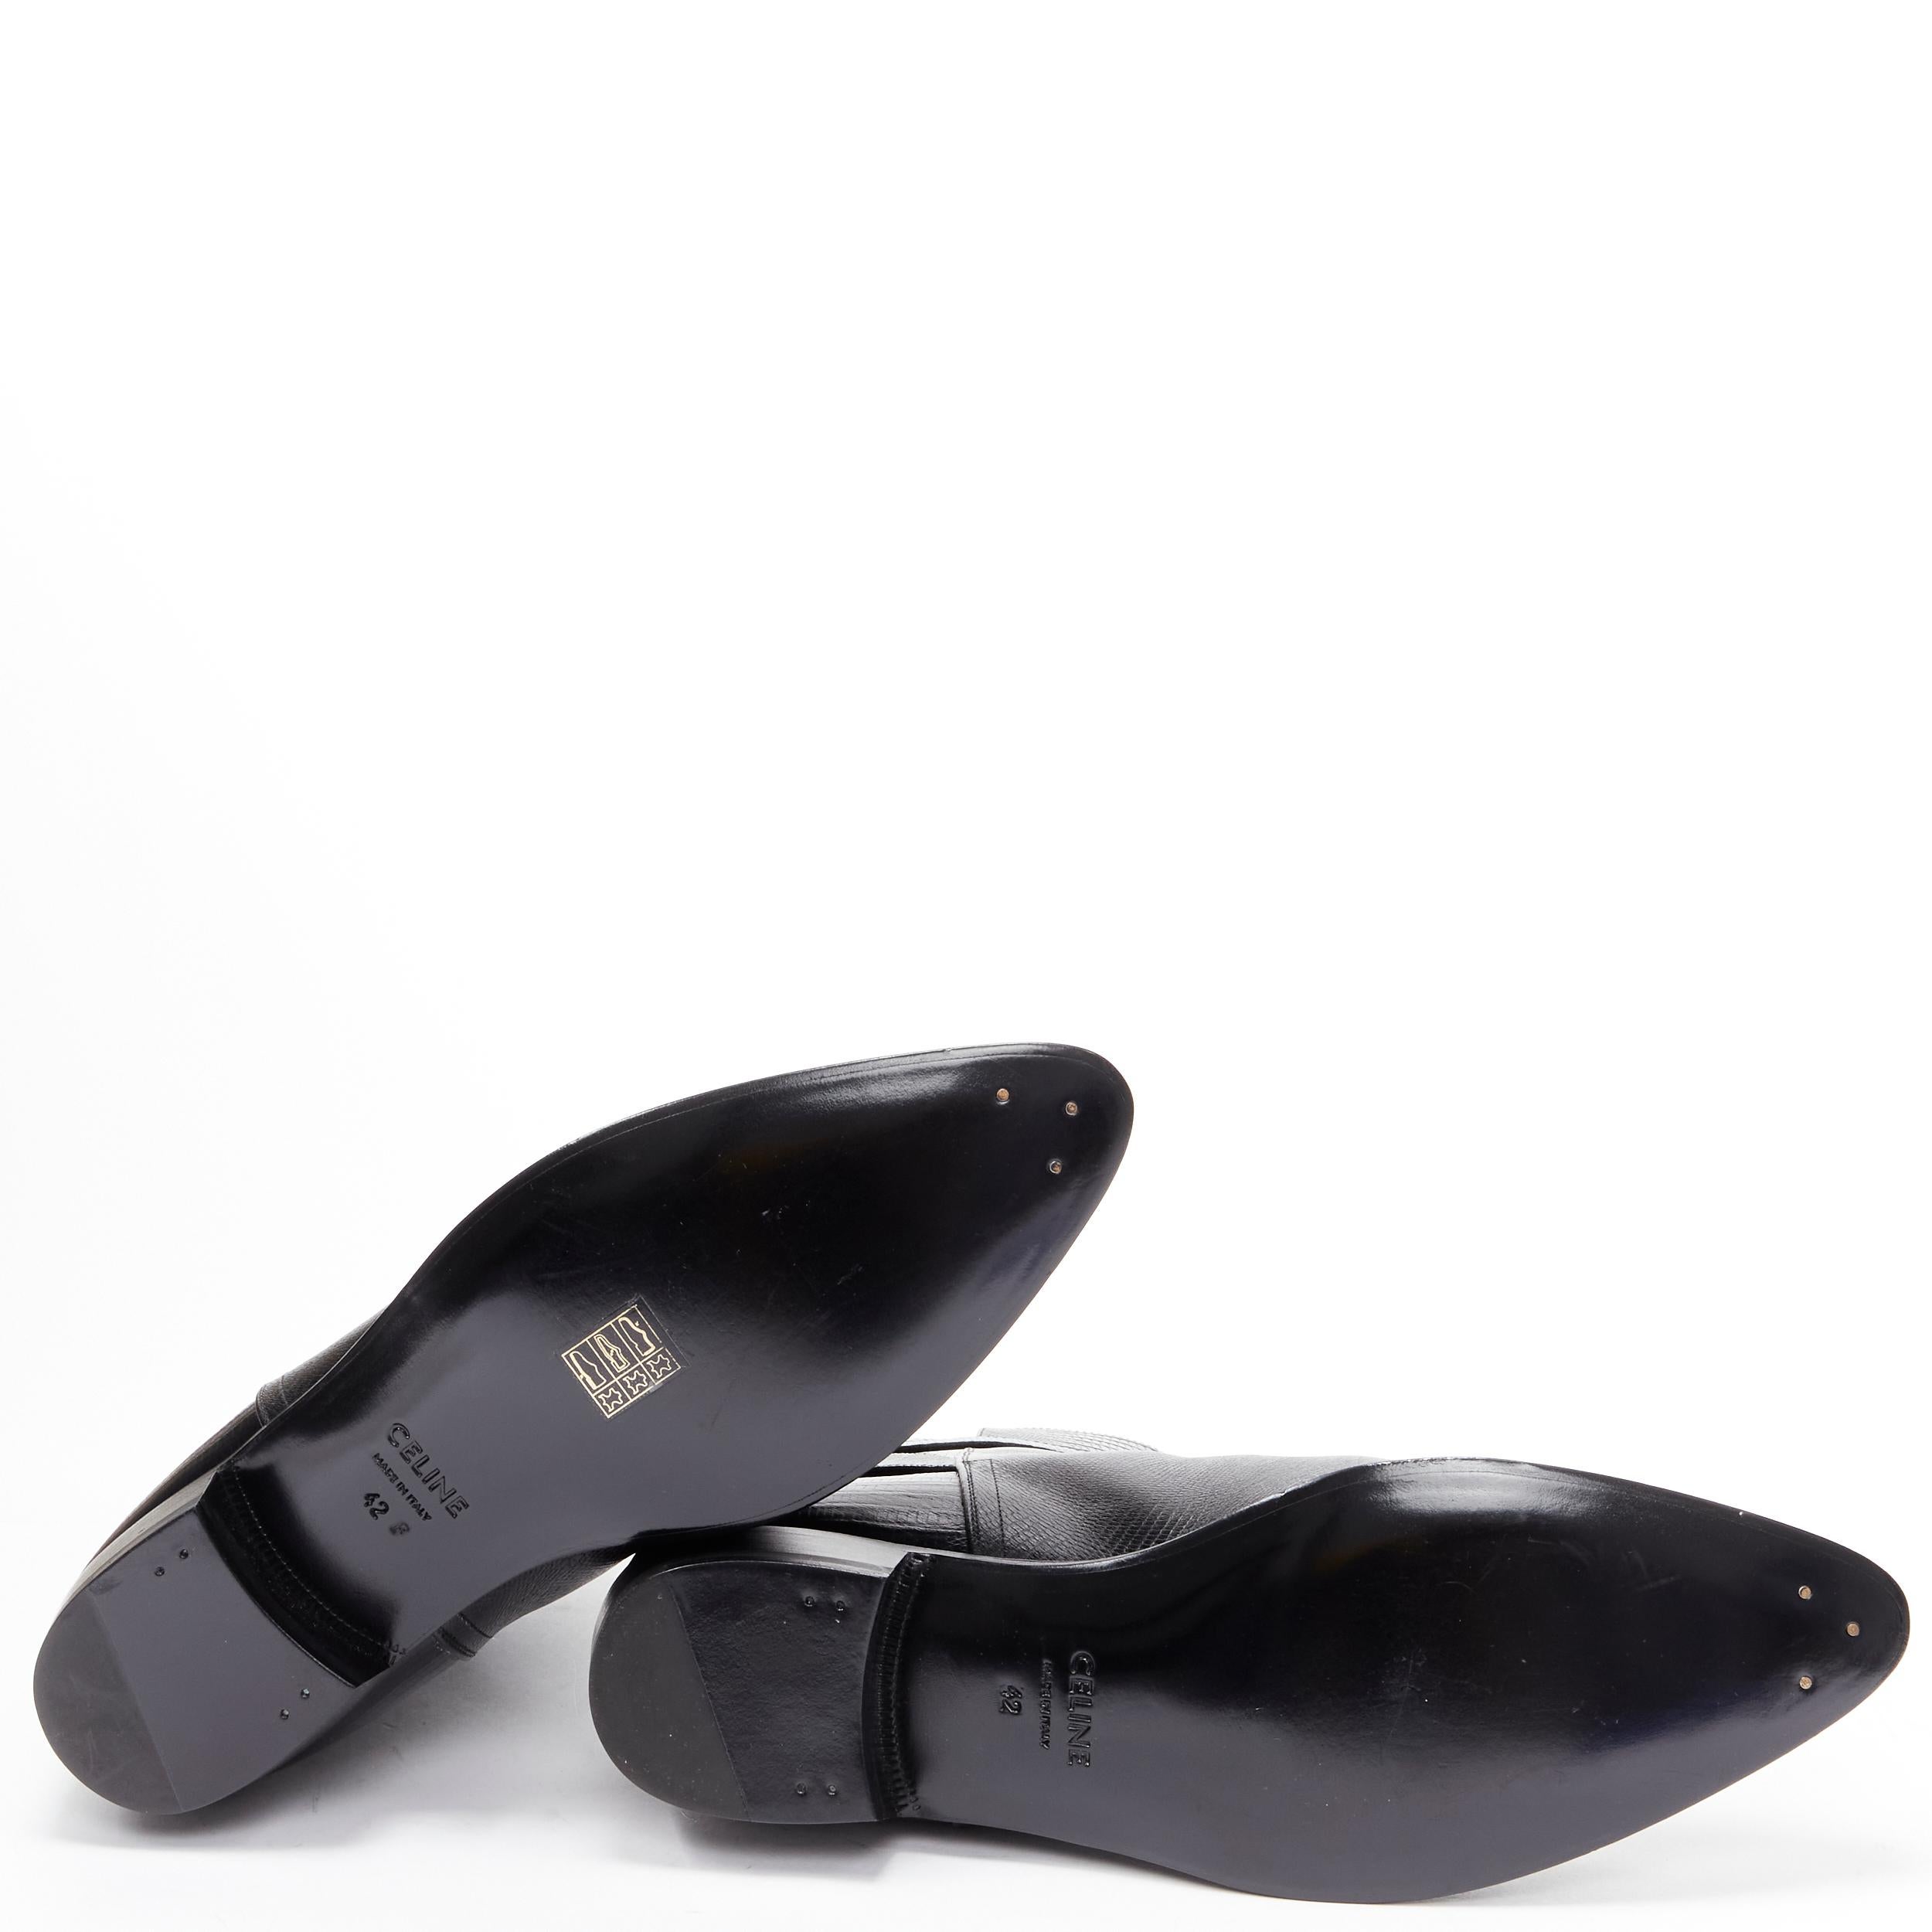 new CELINE Hedi Slimane Jacno Black Tejus stamped leather ankle strap boot EU42 5